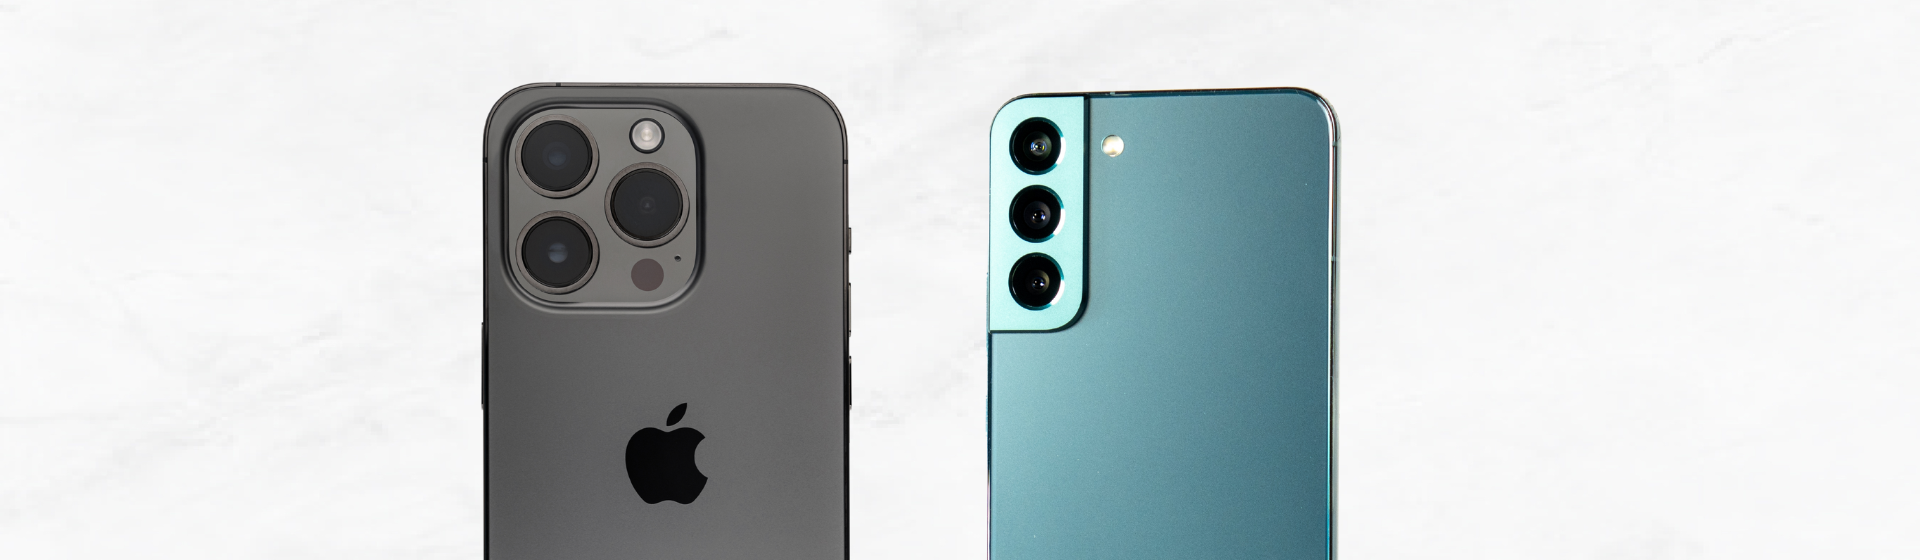 Galaxy S10 vs iPhone XS: qual é o melhor celular top de linha? - DeUmZoom